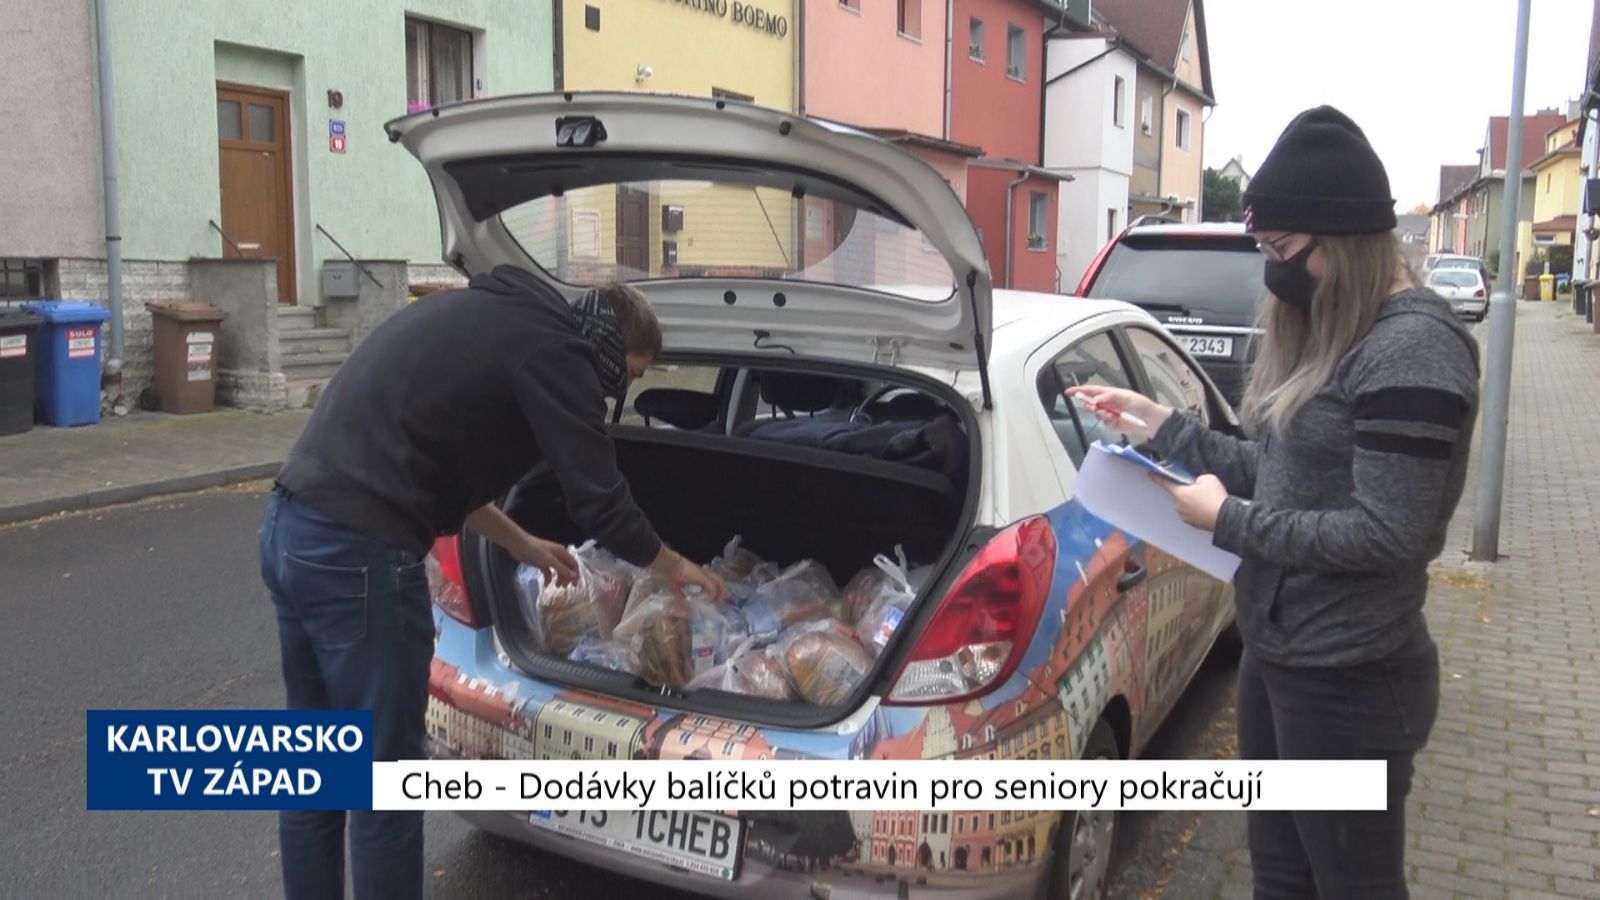 Cheb: Dodávky balíčků potravin pro seniory pokračují (TV Západ)